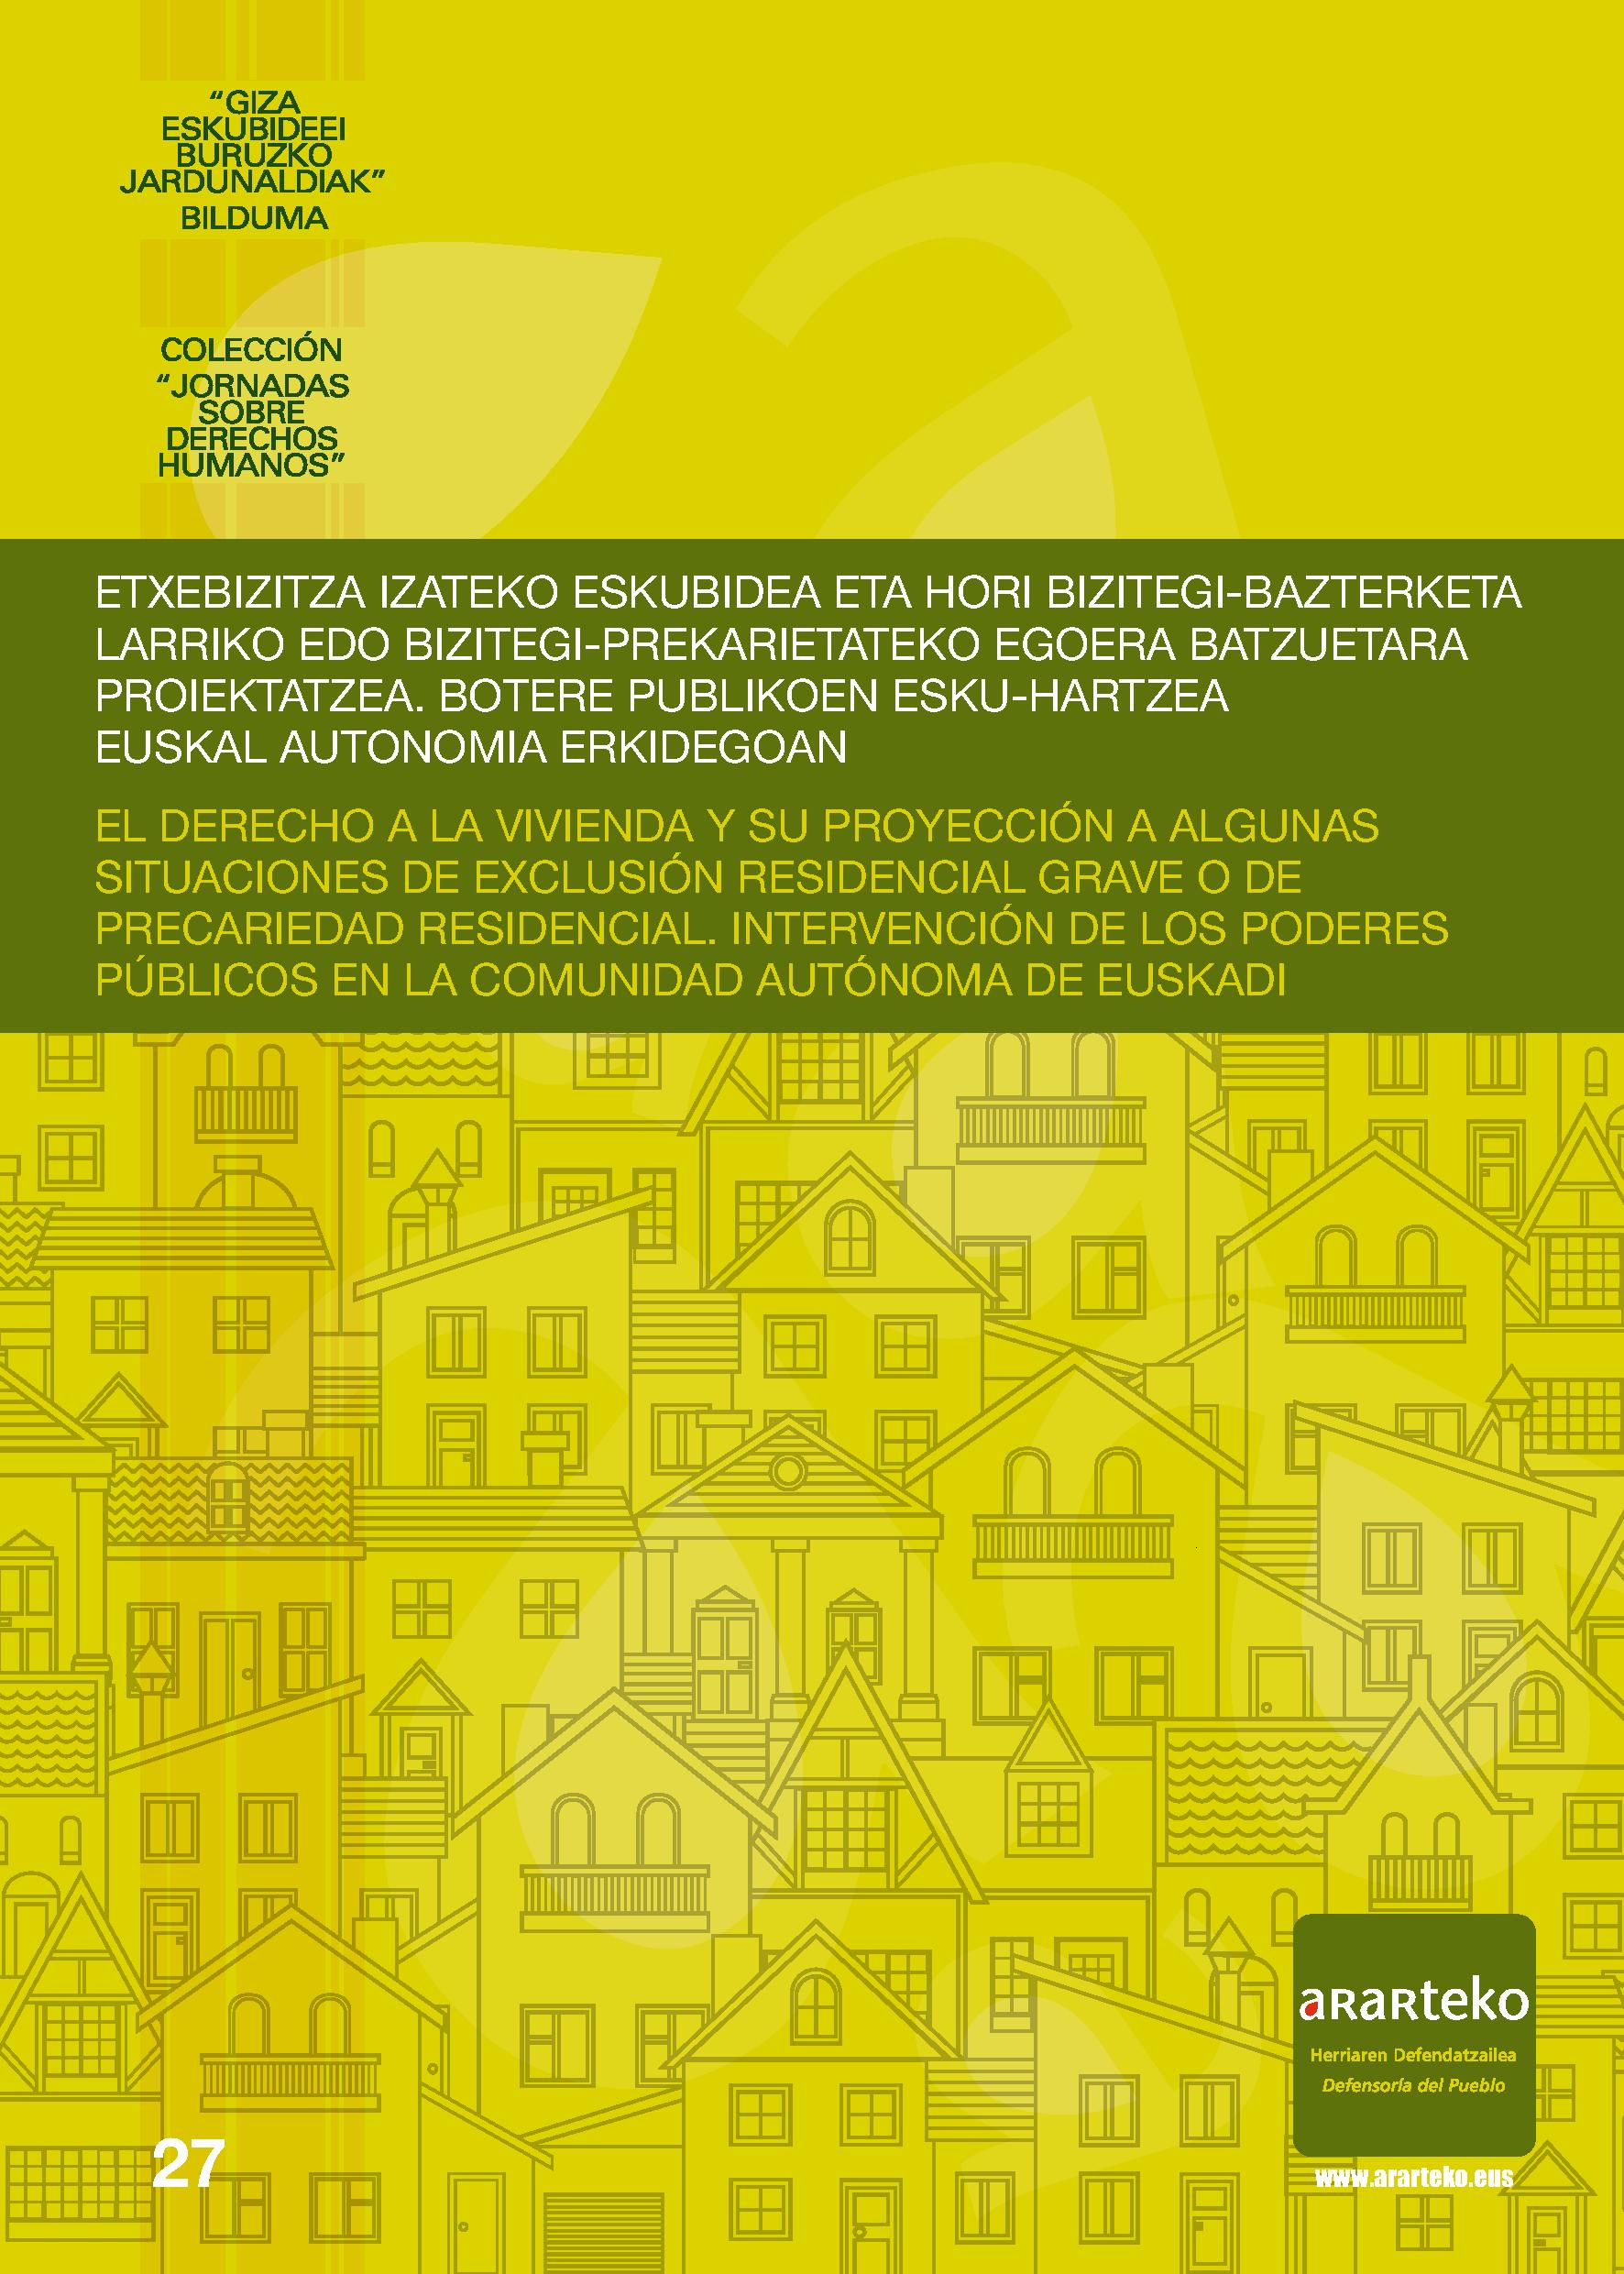 El derecho a la vivienda y su proyección a algunas situaciones de exclusión residencial grave o de precariedad residencial. Intervención de los poderes públicos en la Comunidad Autónoma de Euskadi